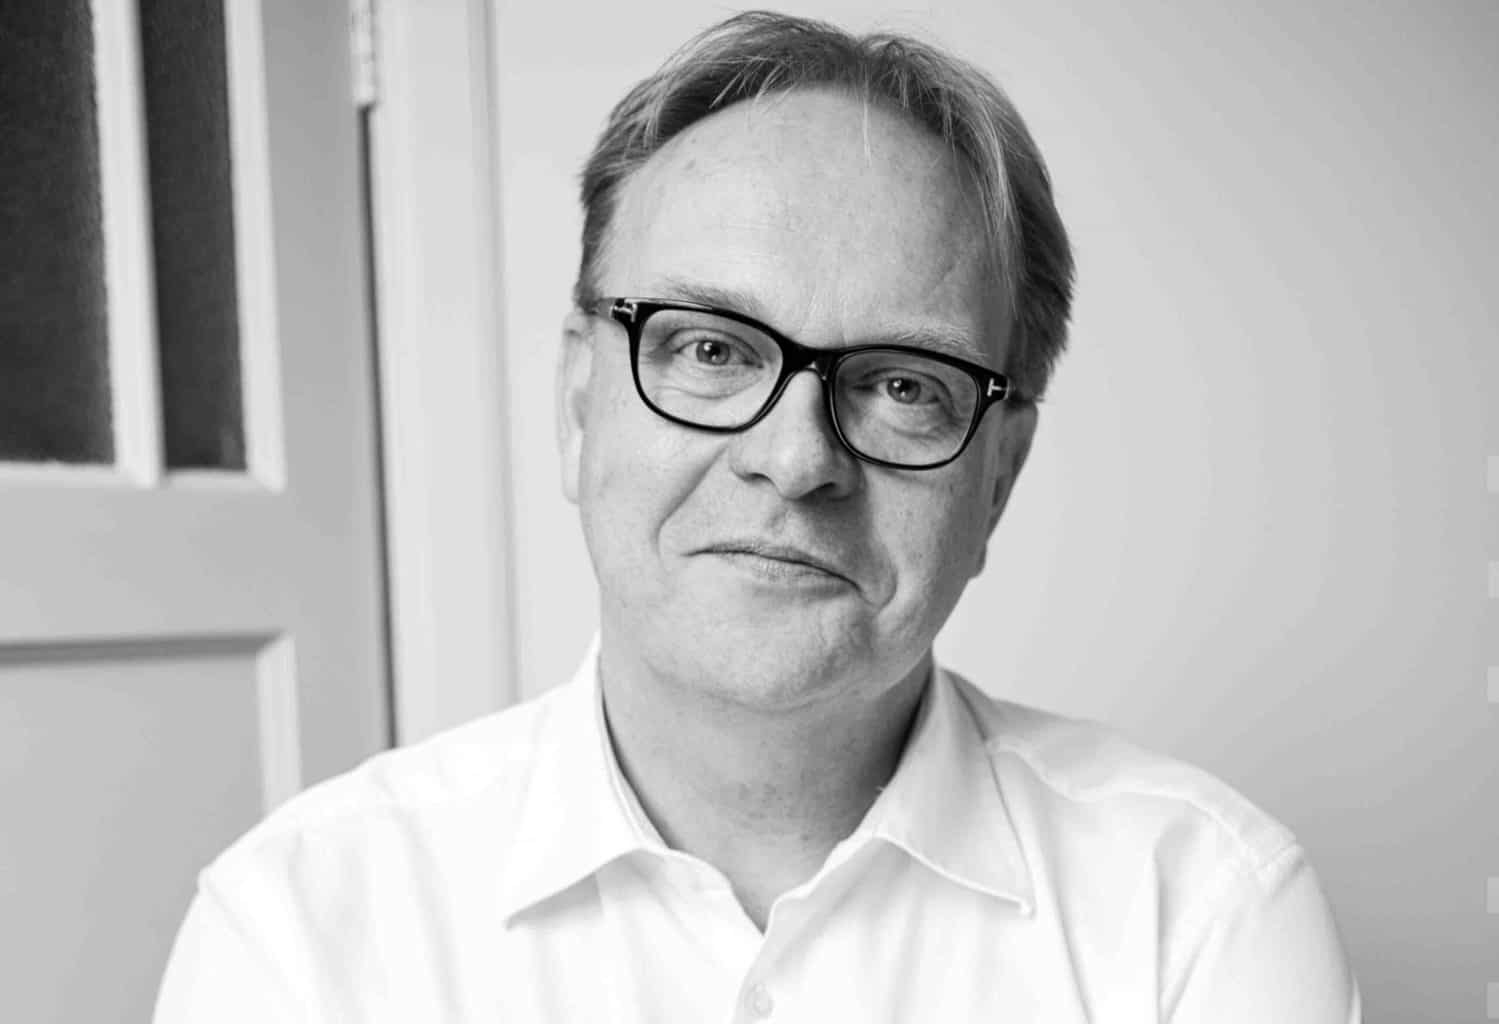 Chairman of VAN Kansspelen, Frits Huffnagel, steps down